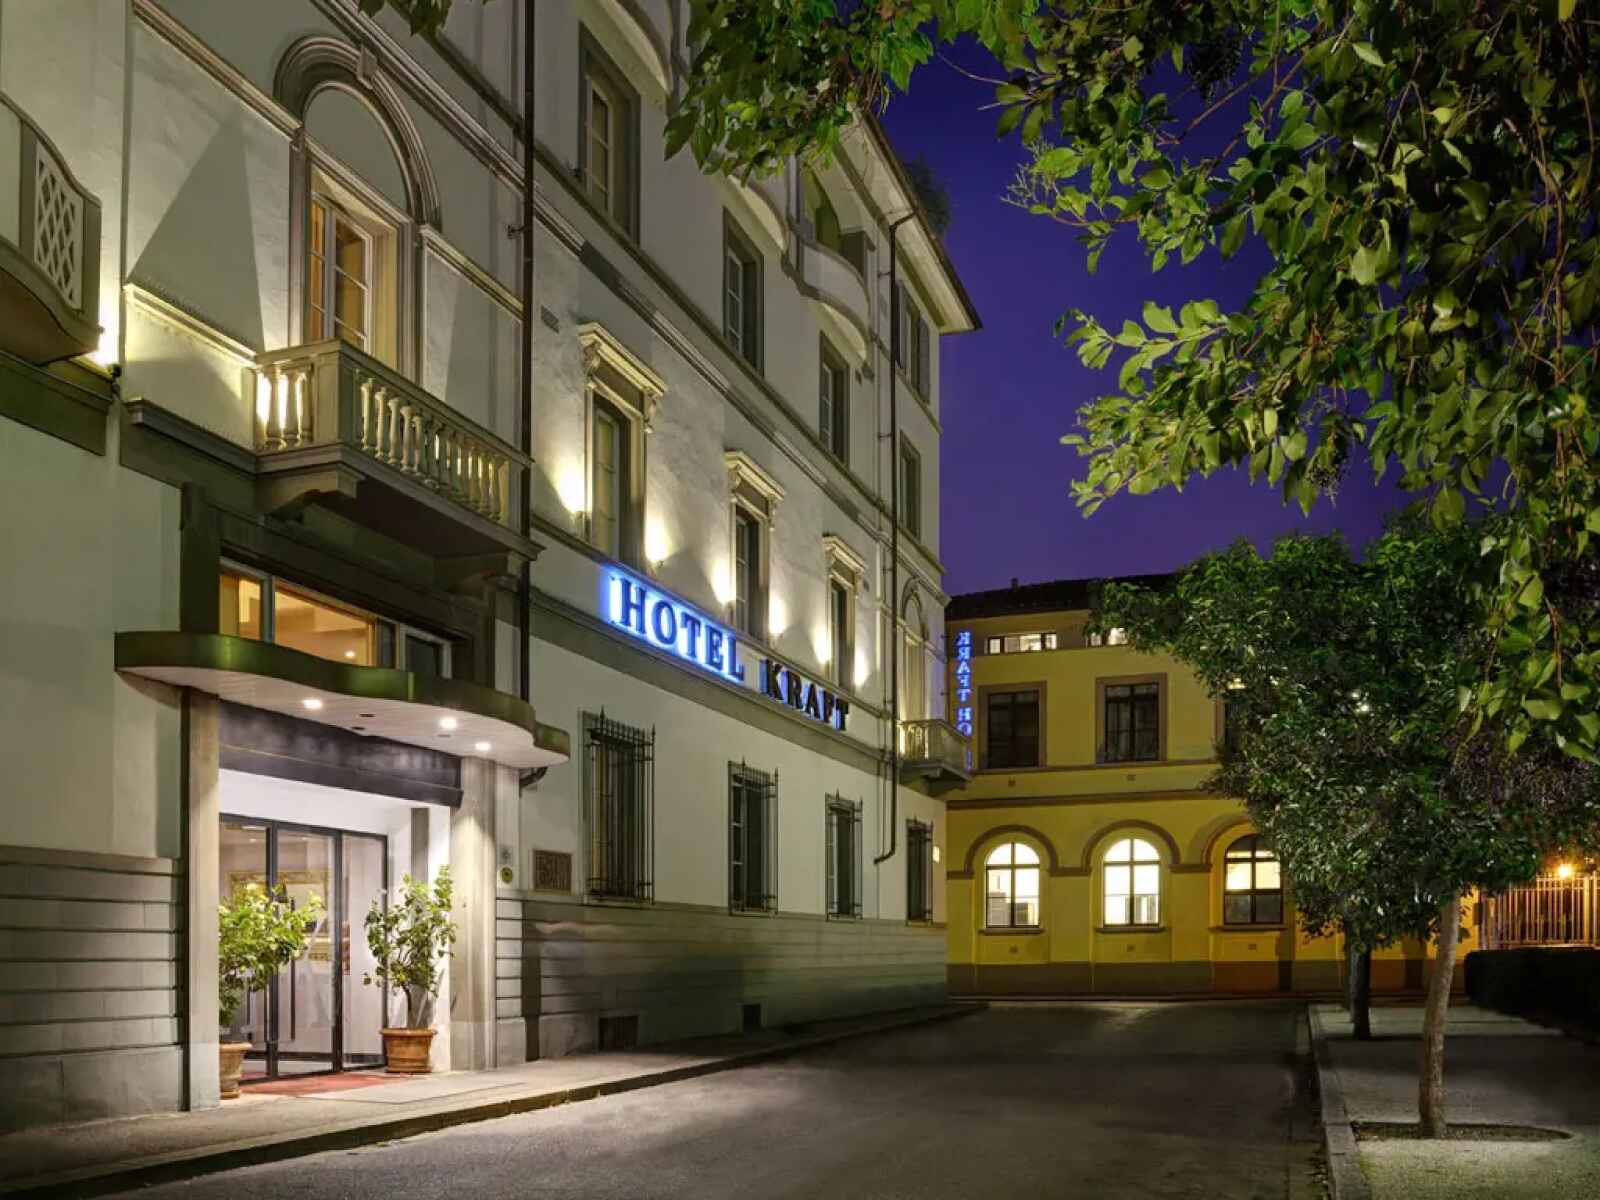 Italie - Florence - Toscane - Hôtel Kraft 4*